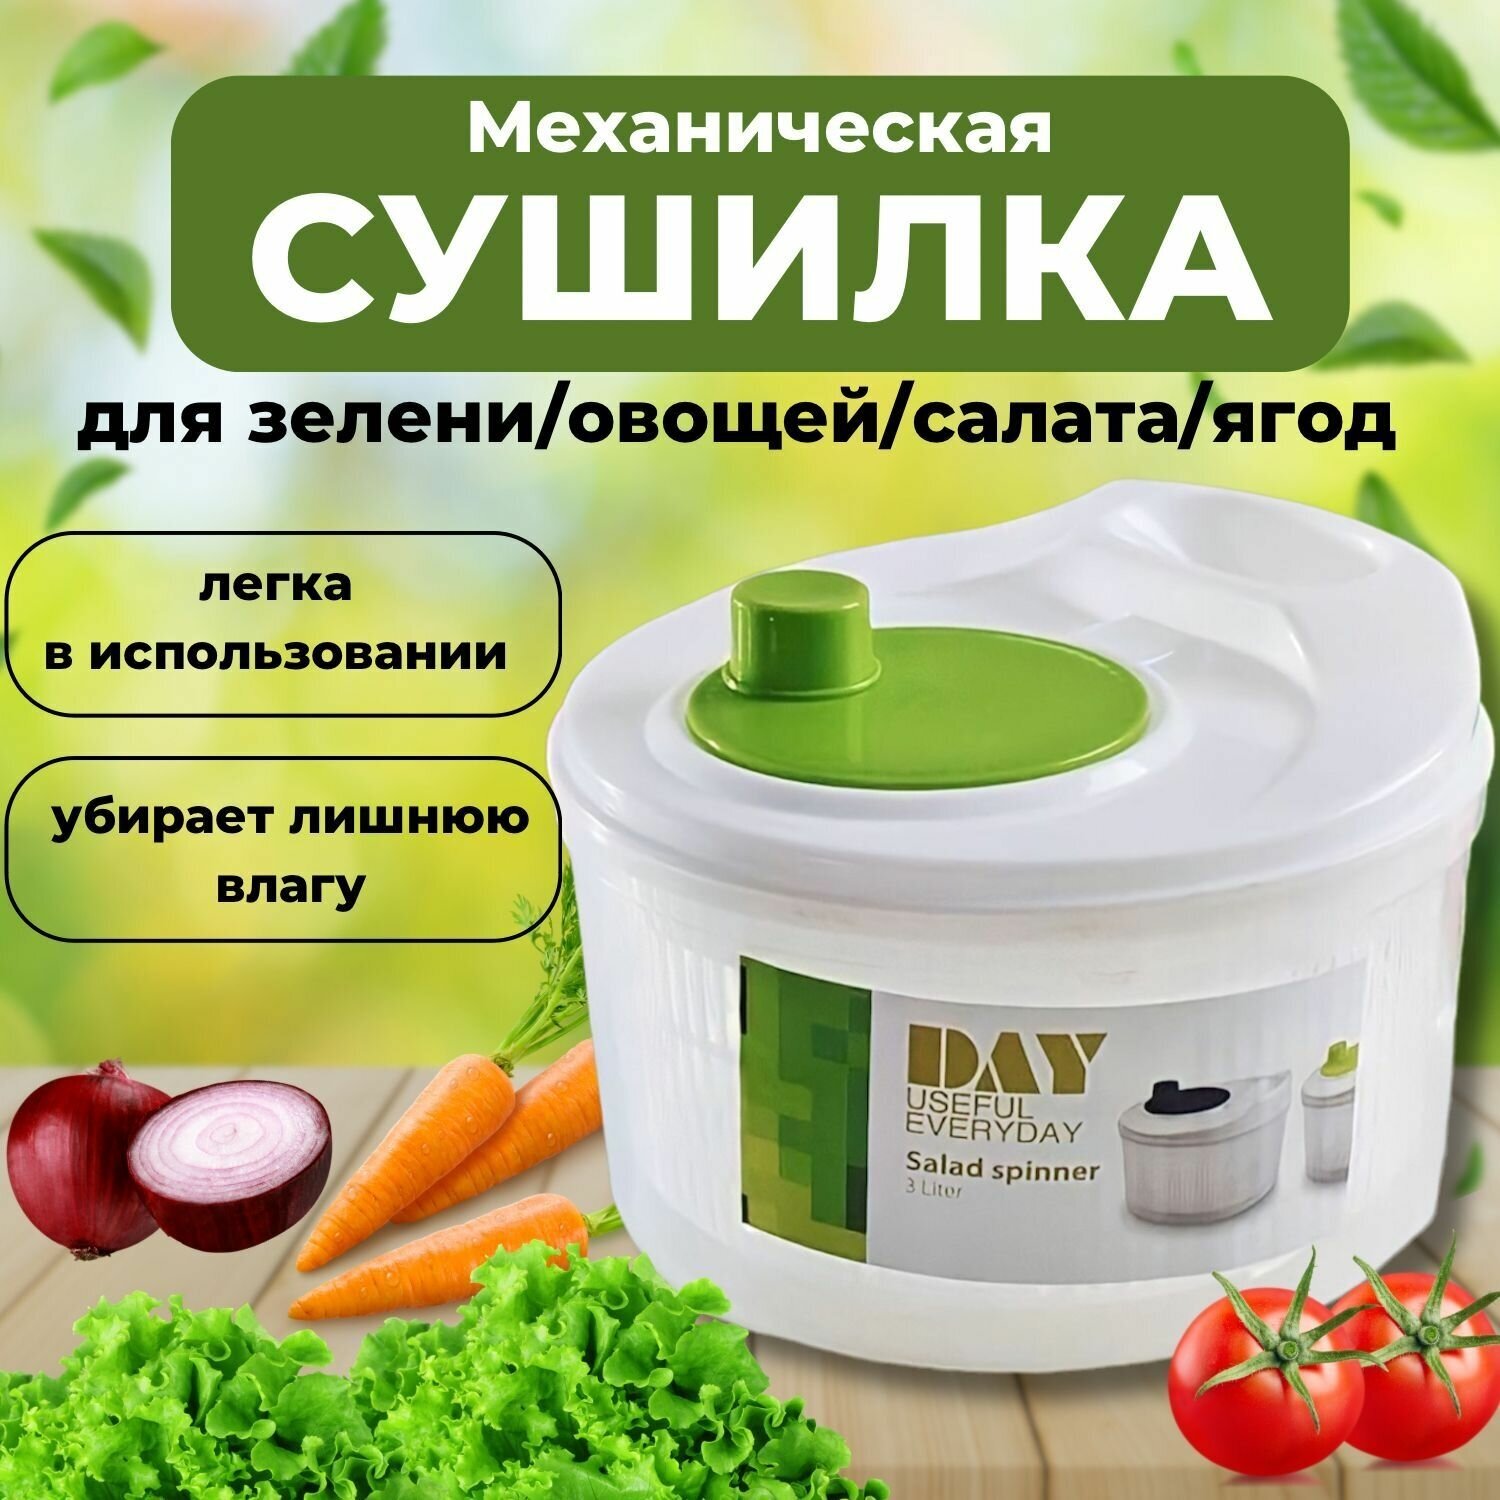 Сушилка ручная механическая для зелени салата овощей фруктов центрифуга 3.2 л